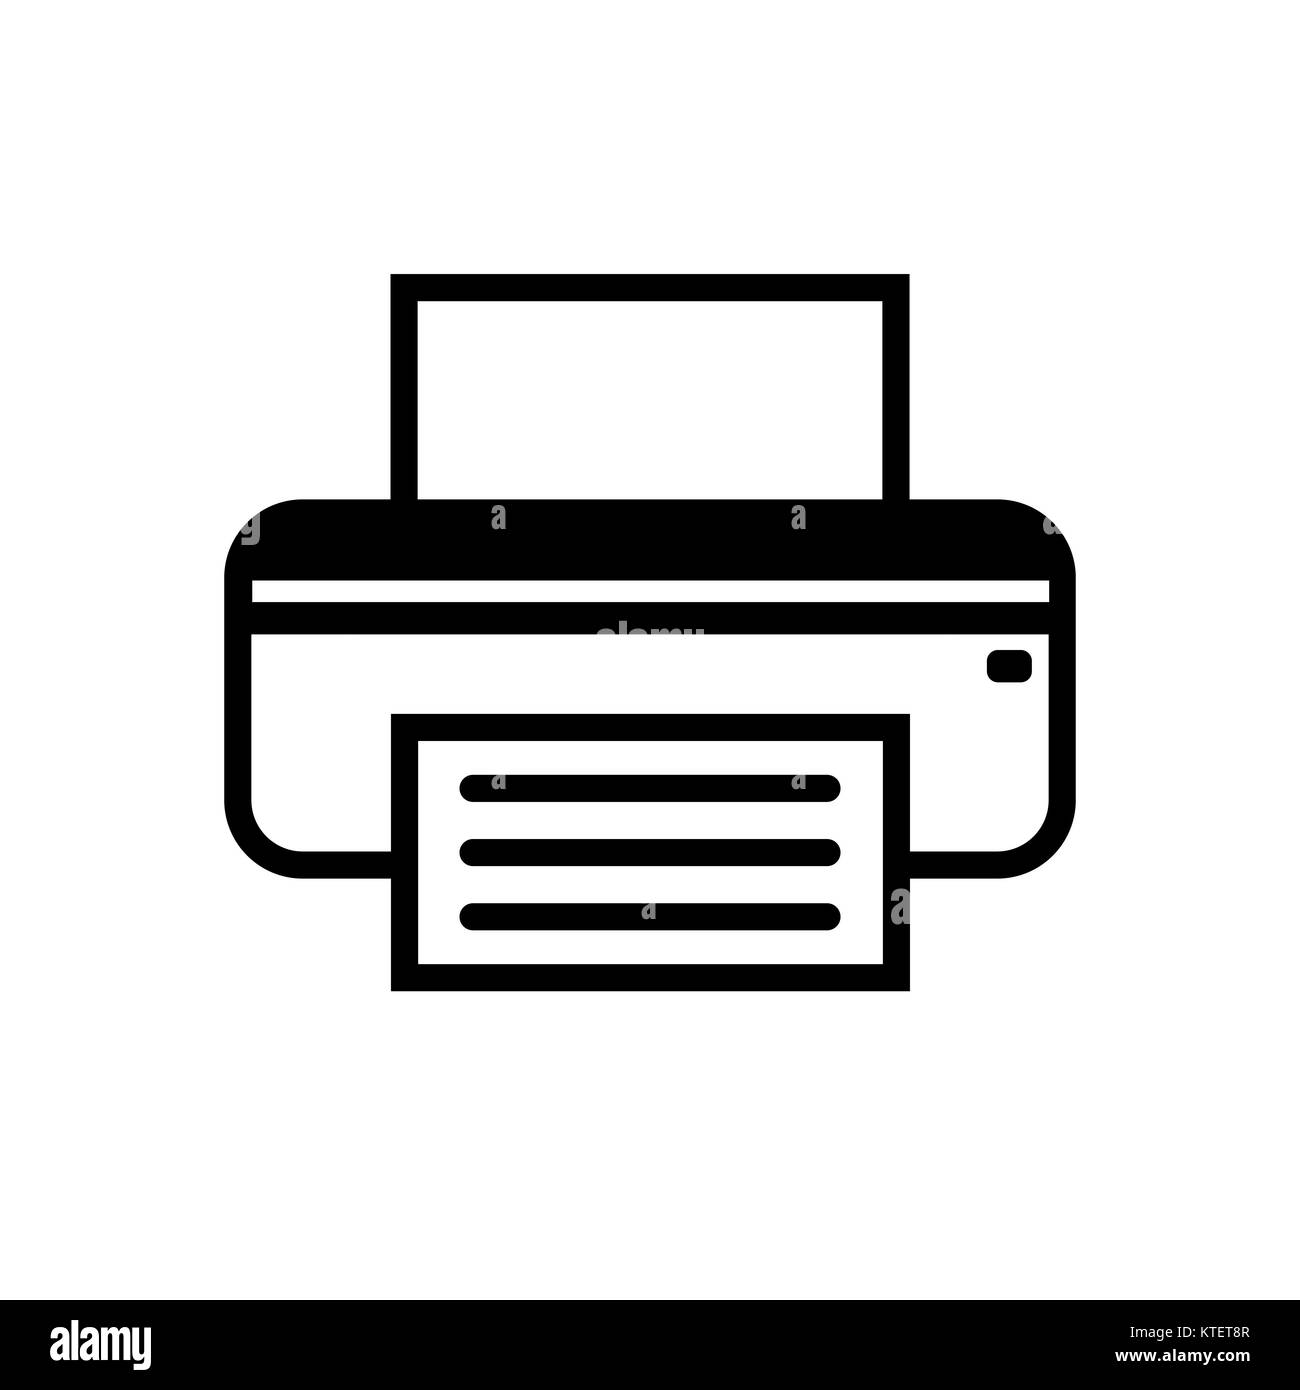 Fax icon Banque de photographies et d'images à haute résolution - Alamy